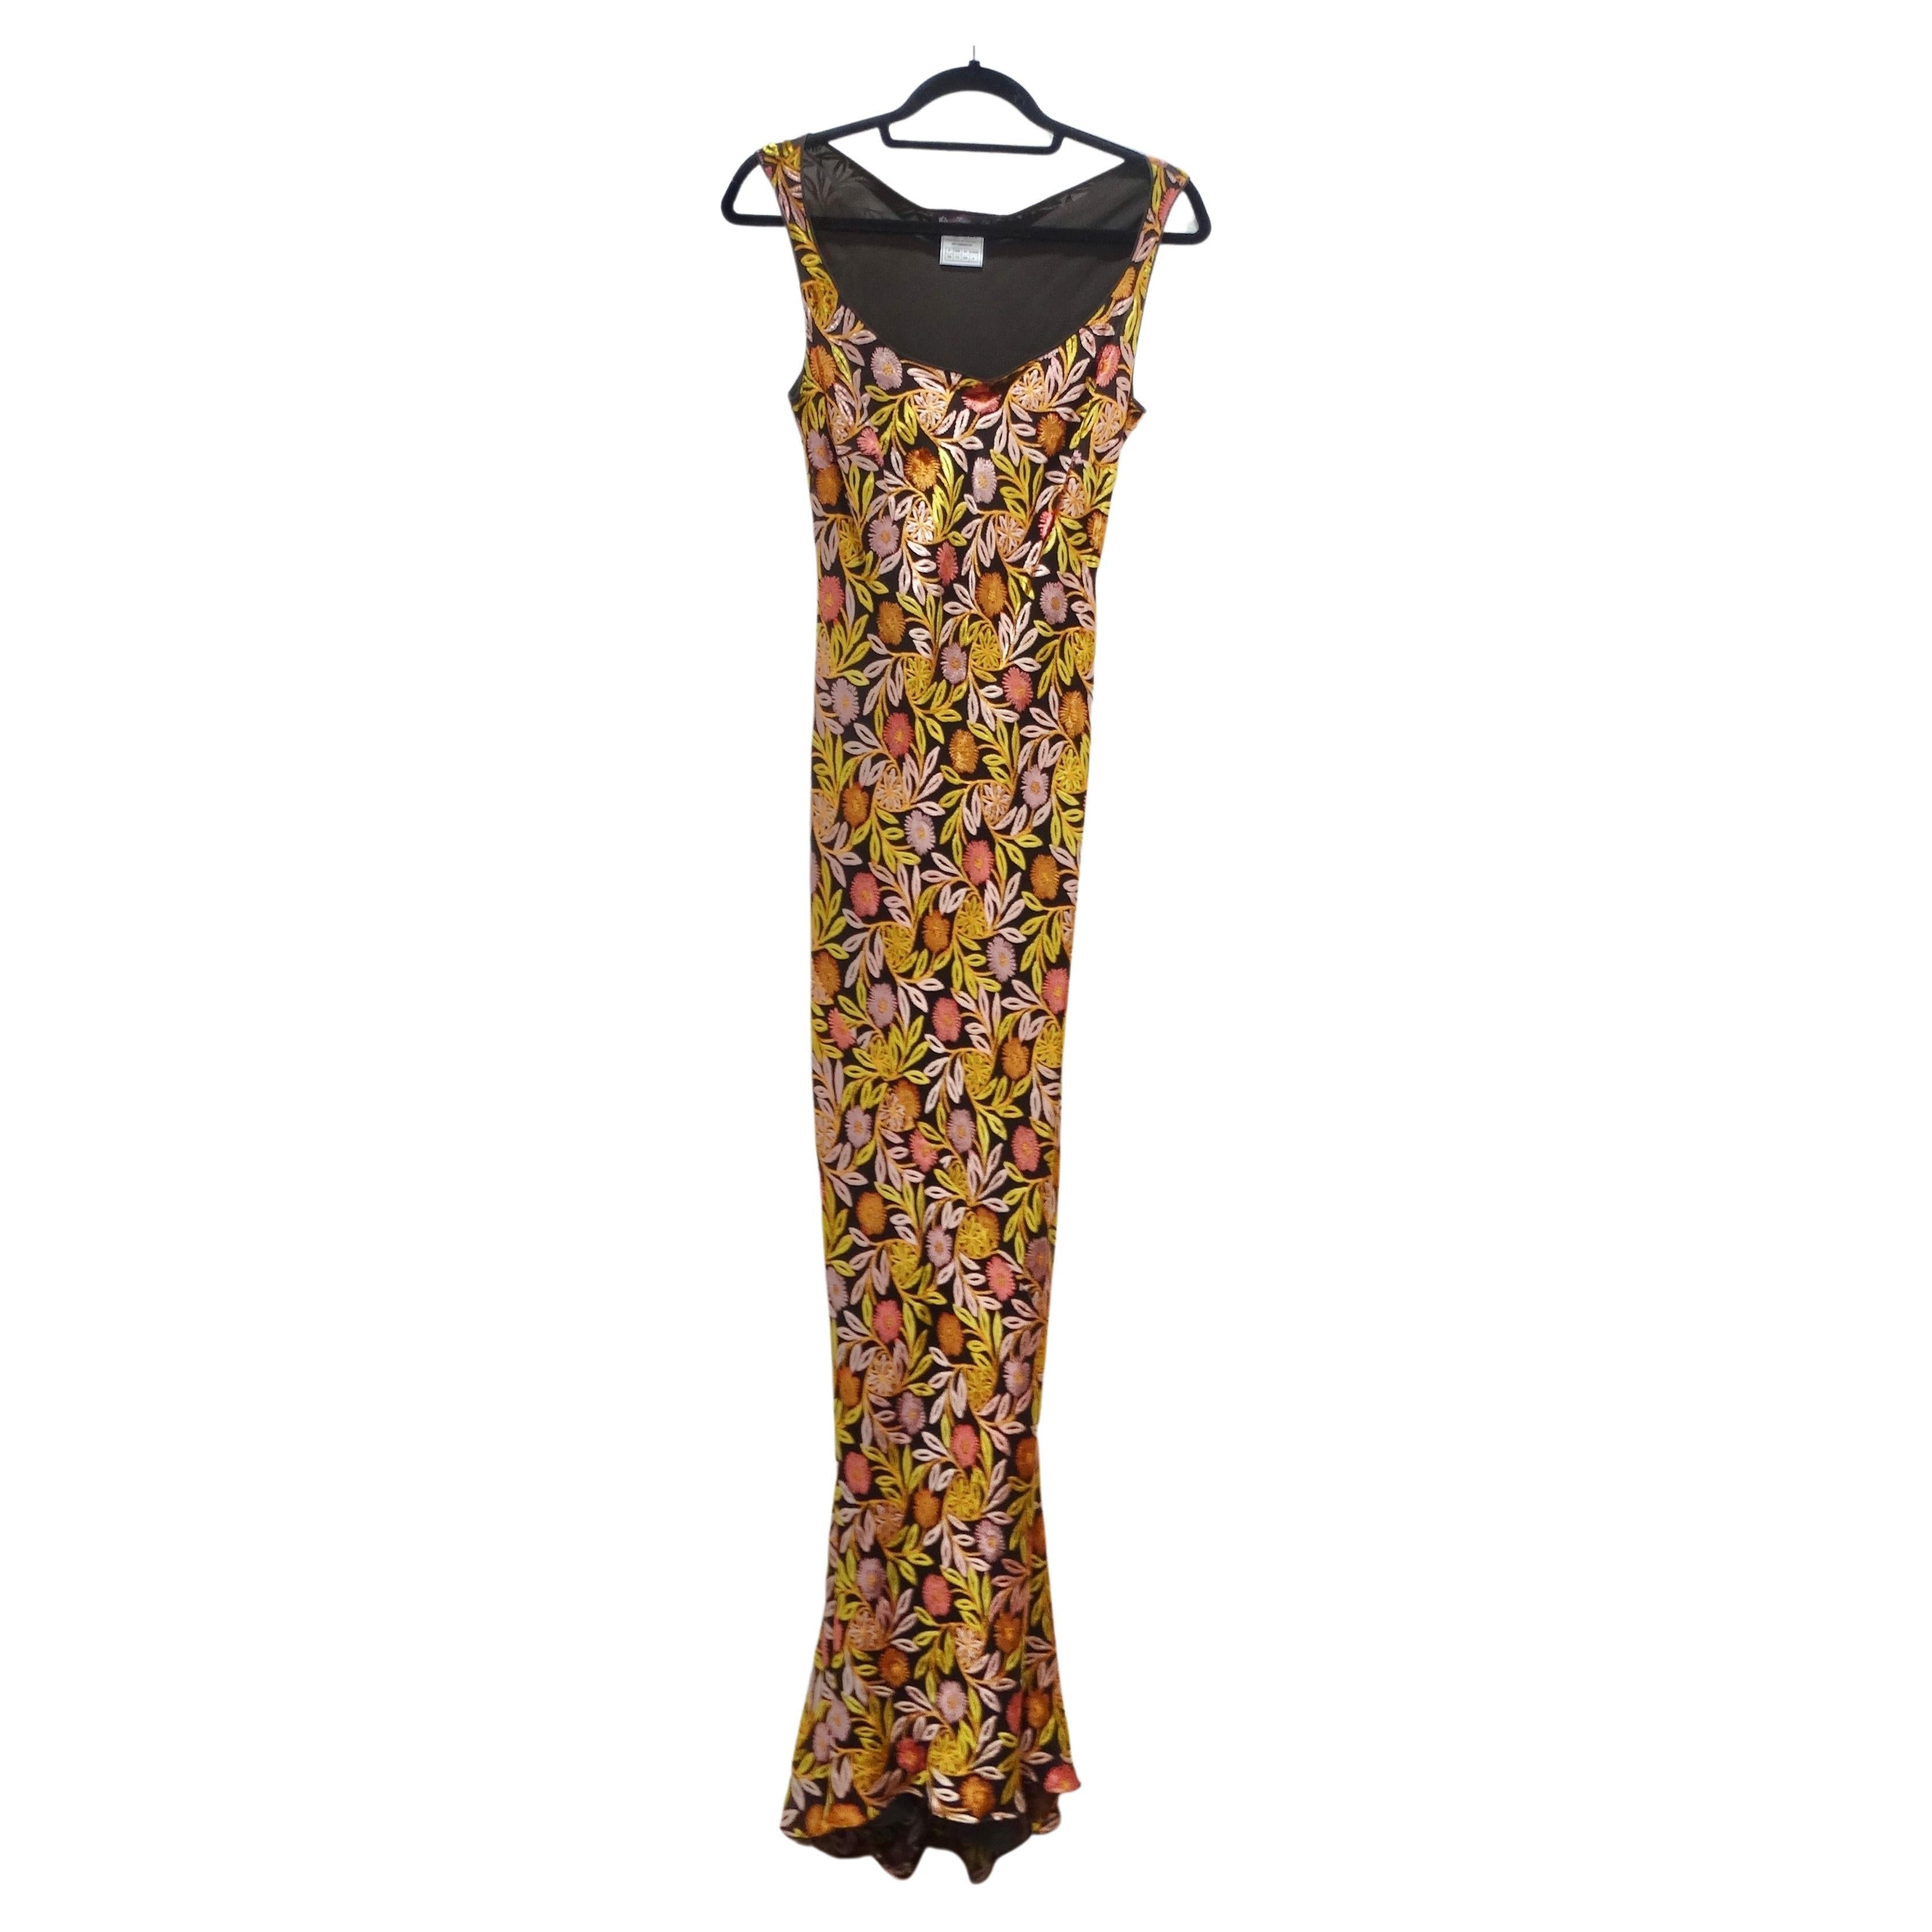 Voici une pièce remarquable de l'histoire de la mode : cette rare robe longue à coupe en biais de John Galliano, datant du début des années 2000. Cette robe incarne l'élégance intemporelle, alliant l'attrait du passé à une touche de sophistication